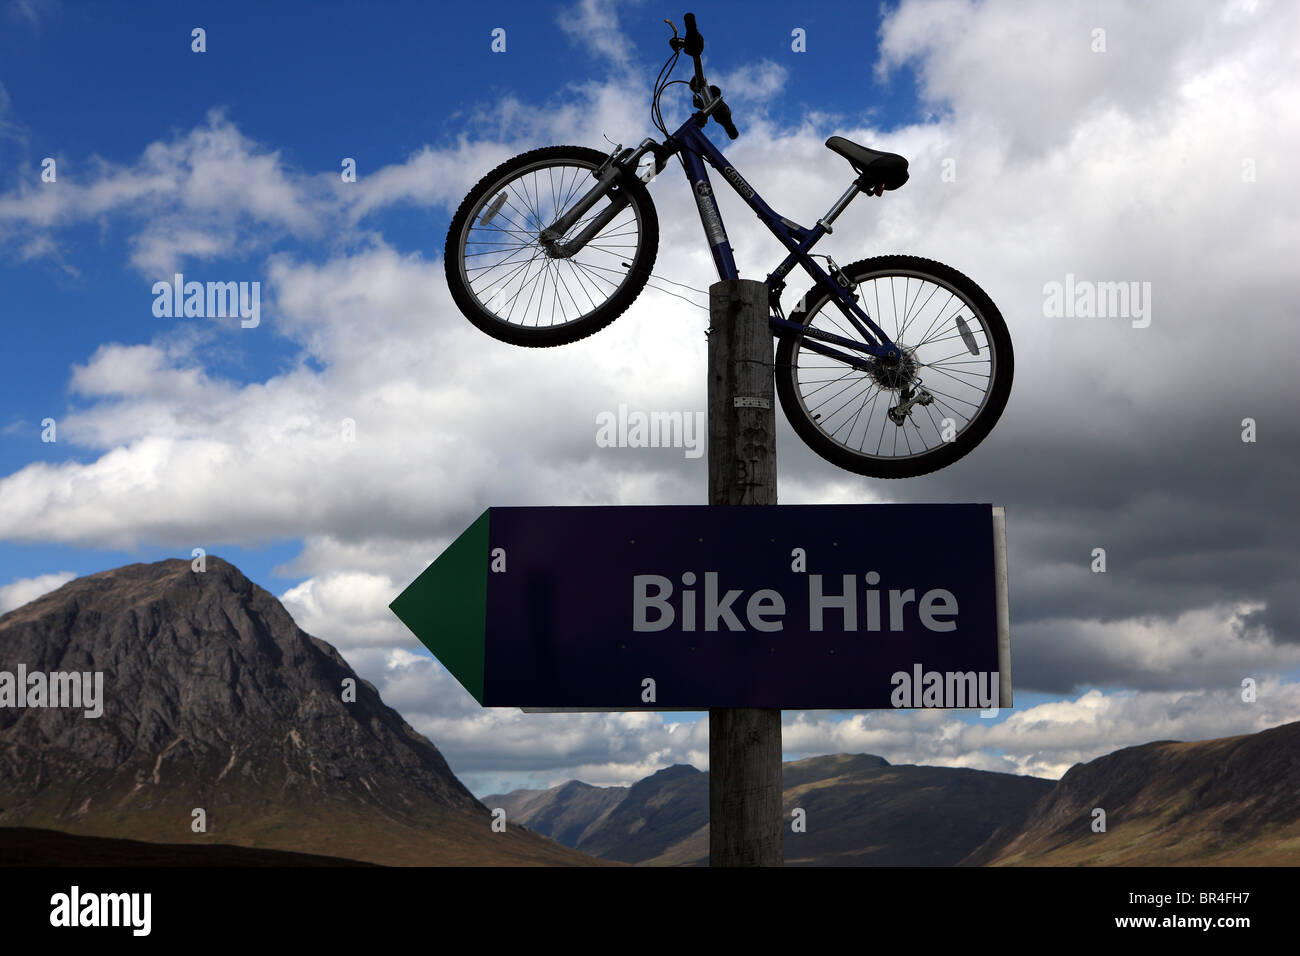 Bike hire sign Stock Photo